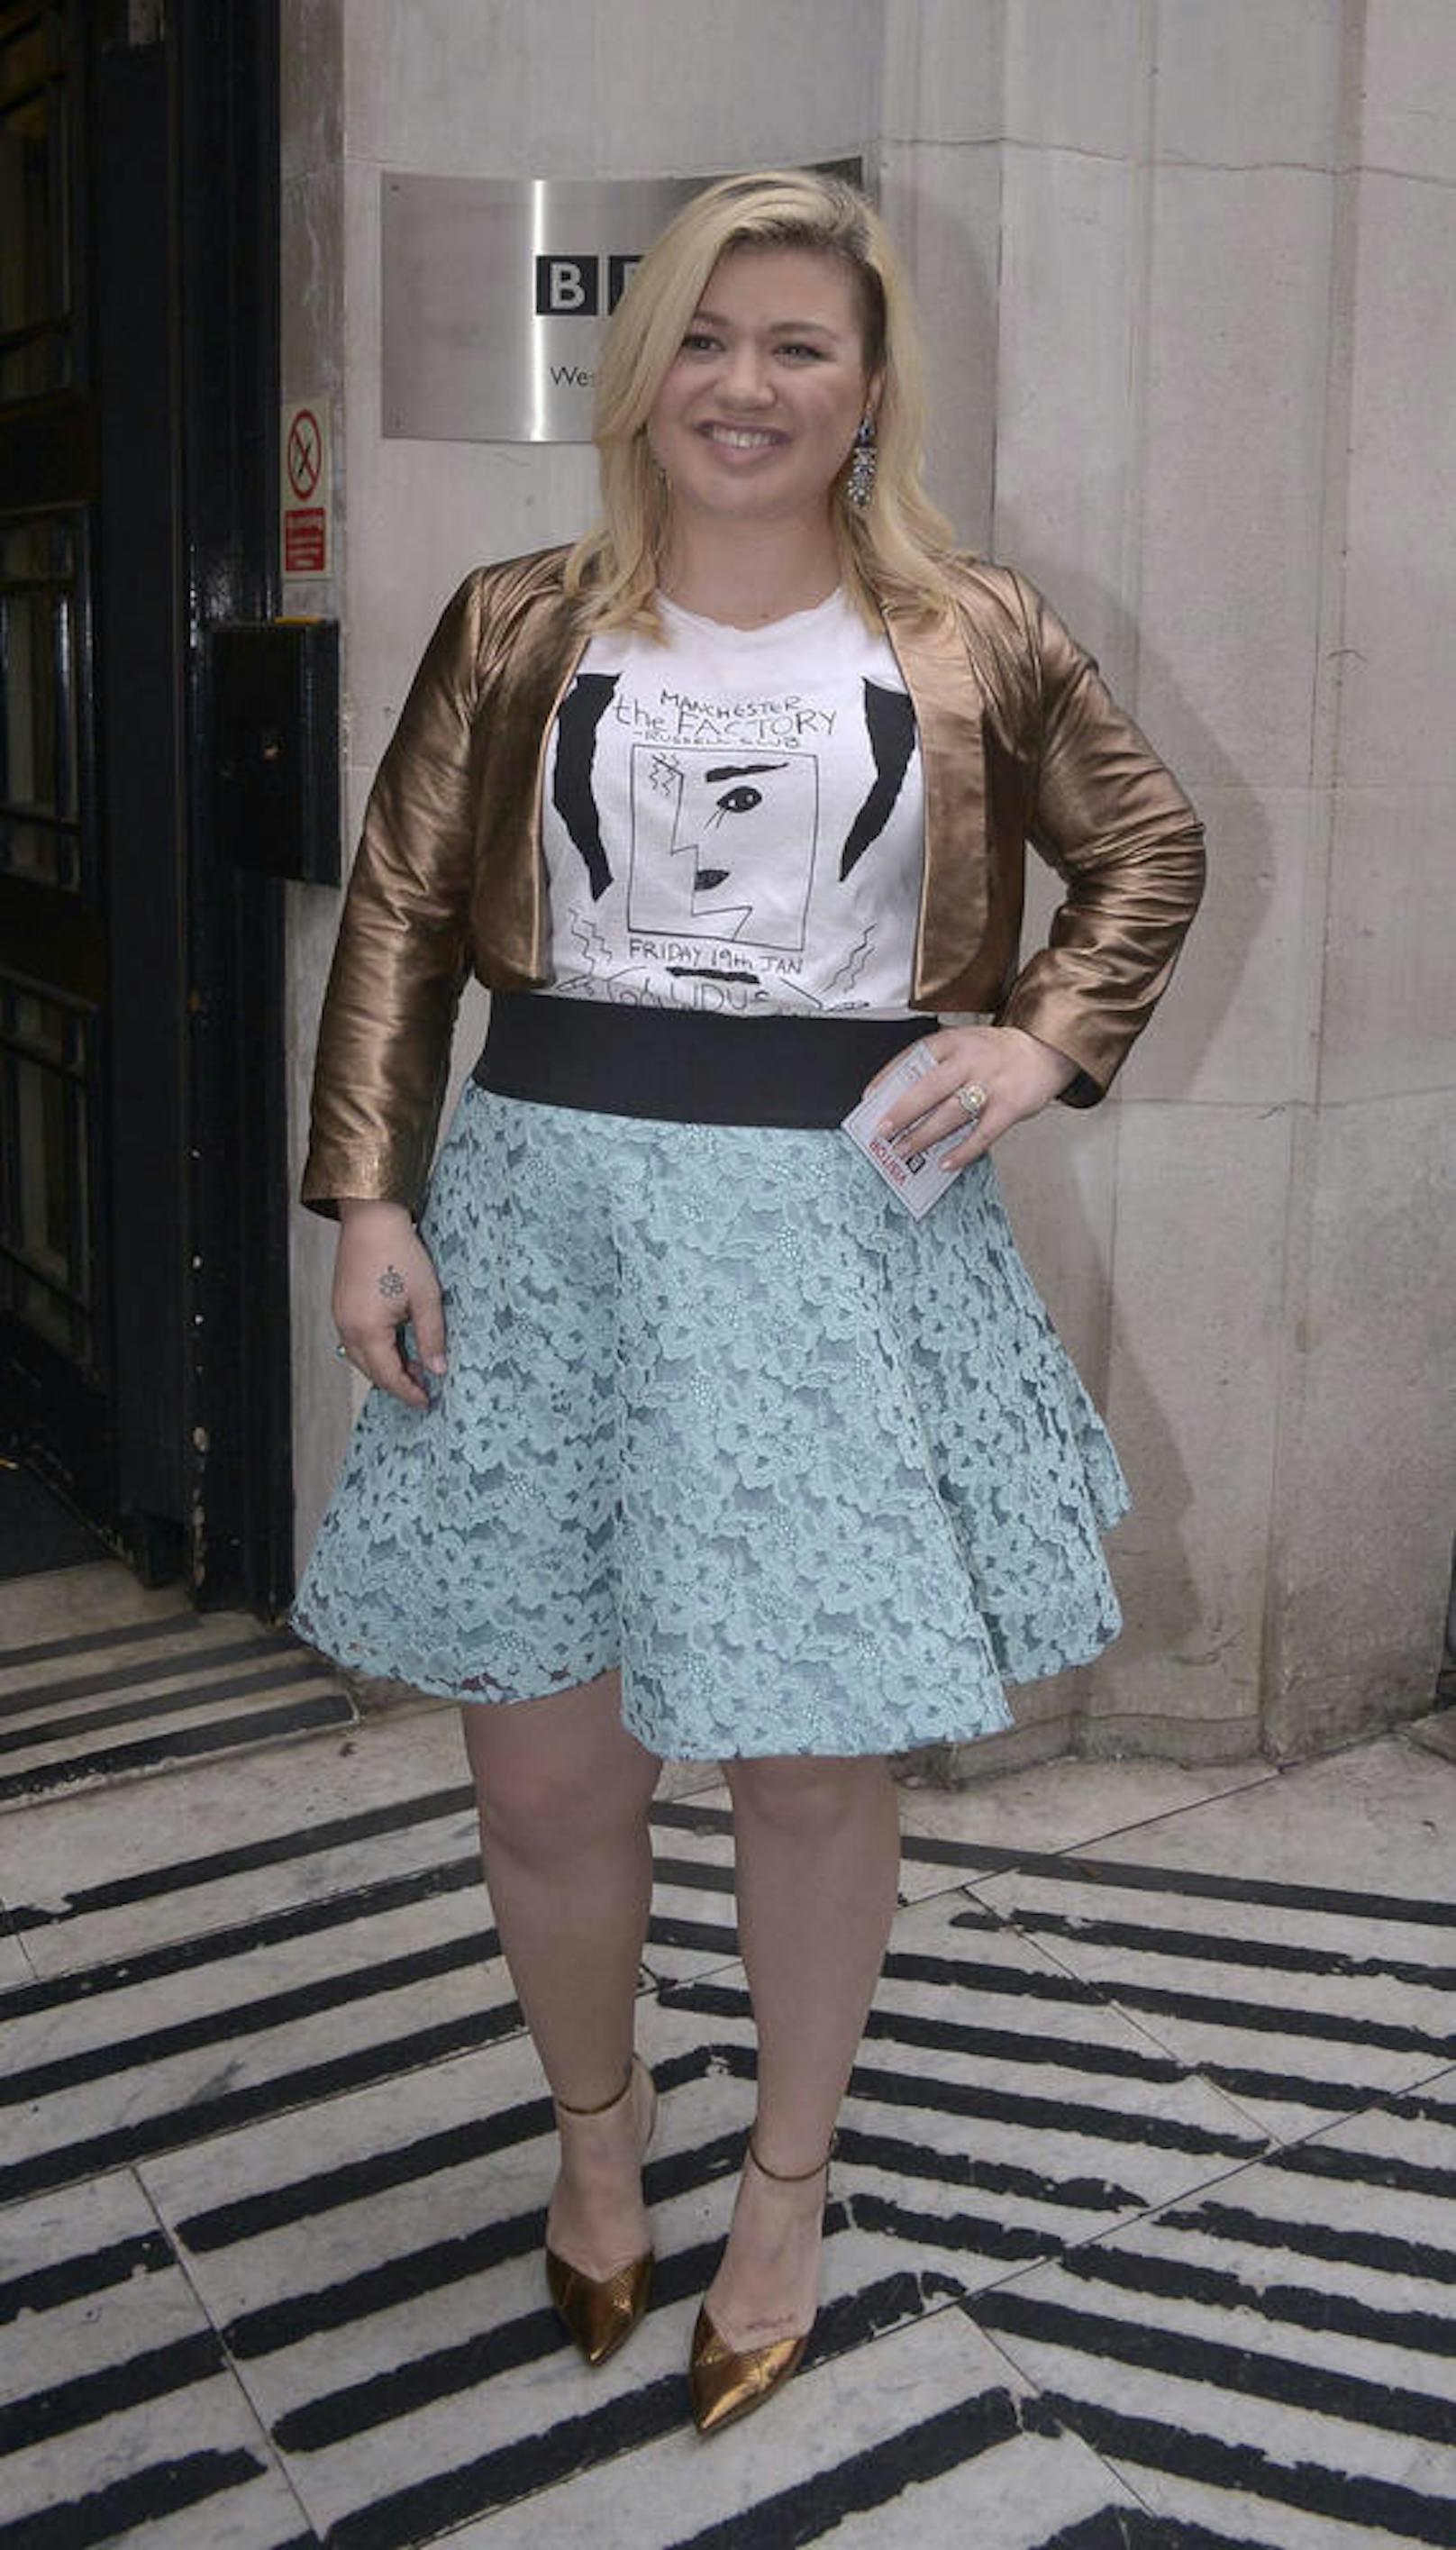 Kelly Clarkson in London, 2002.